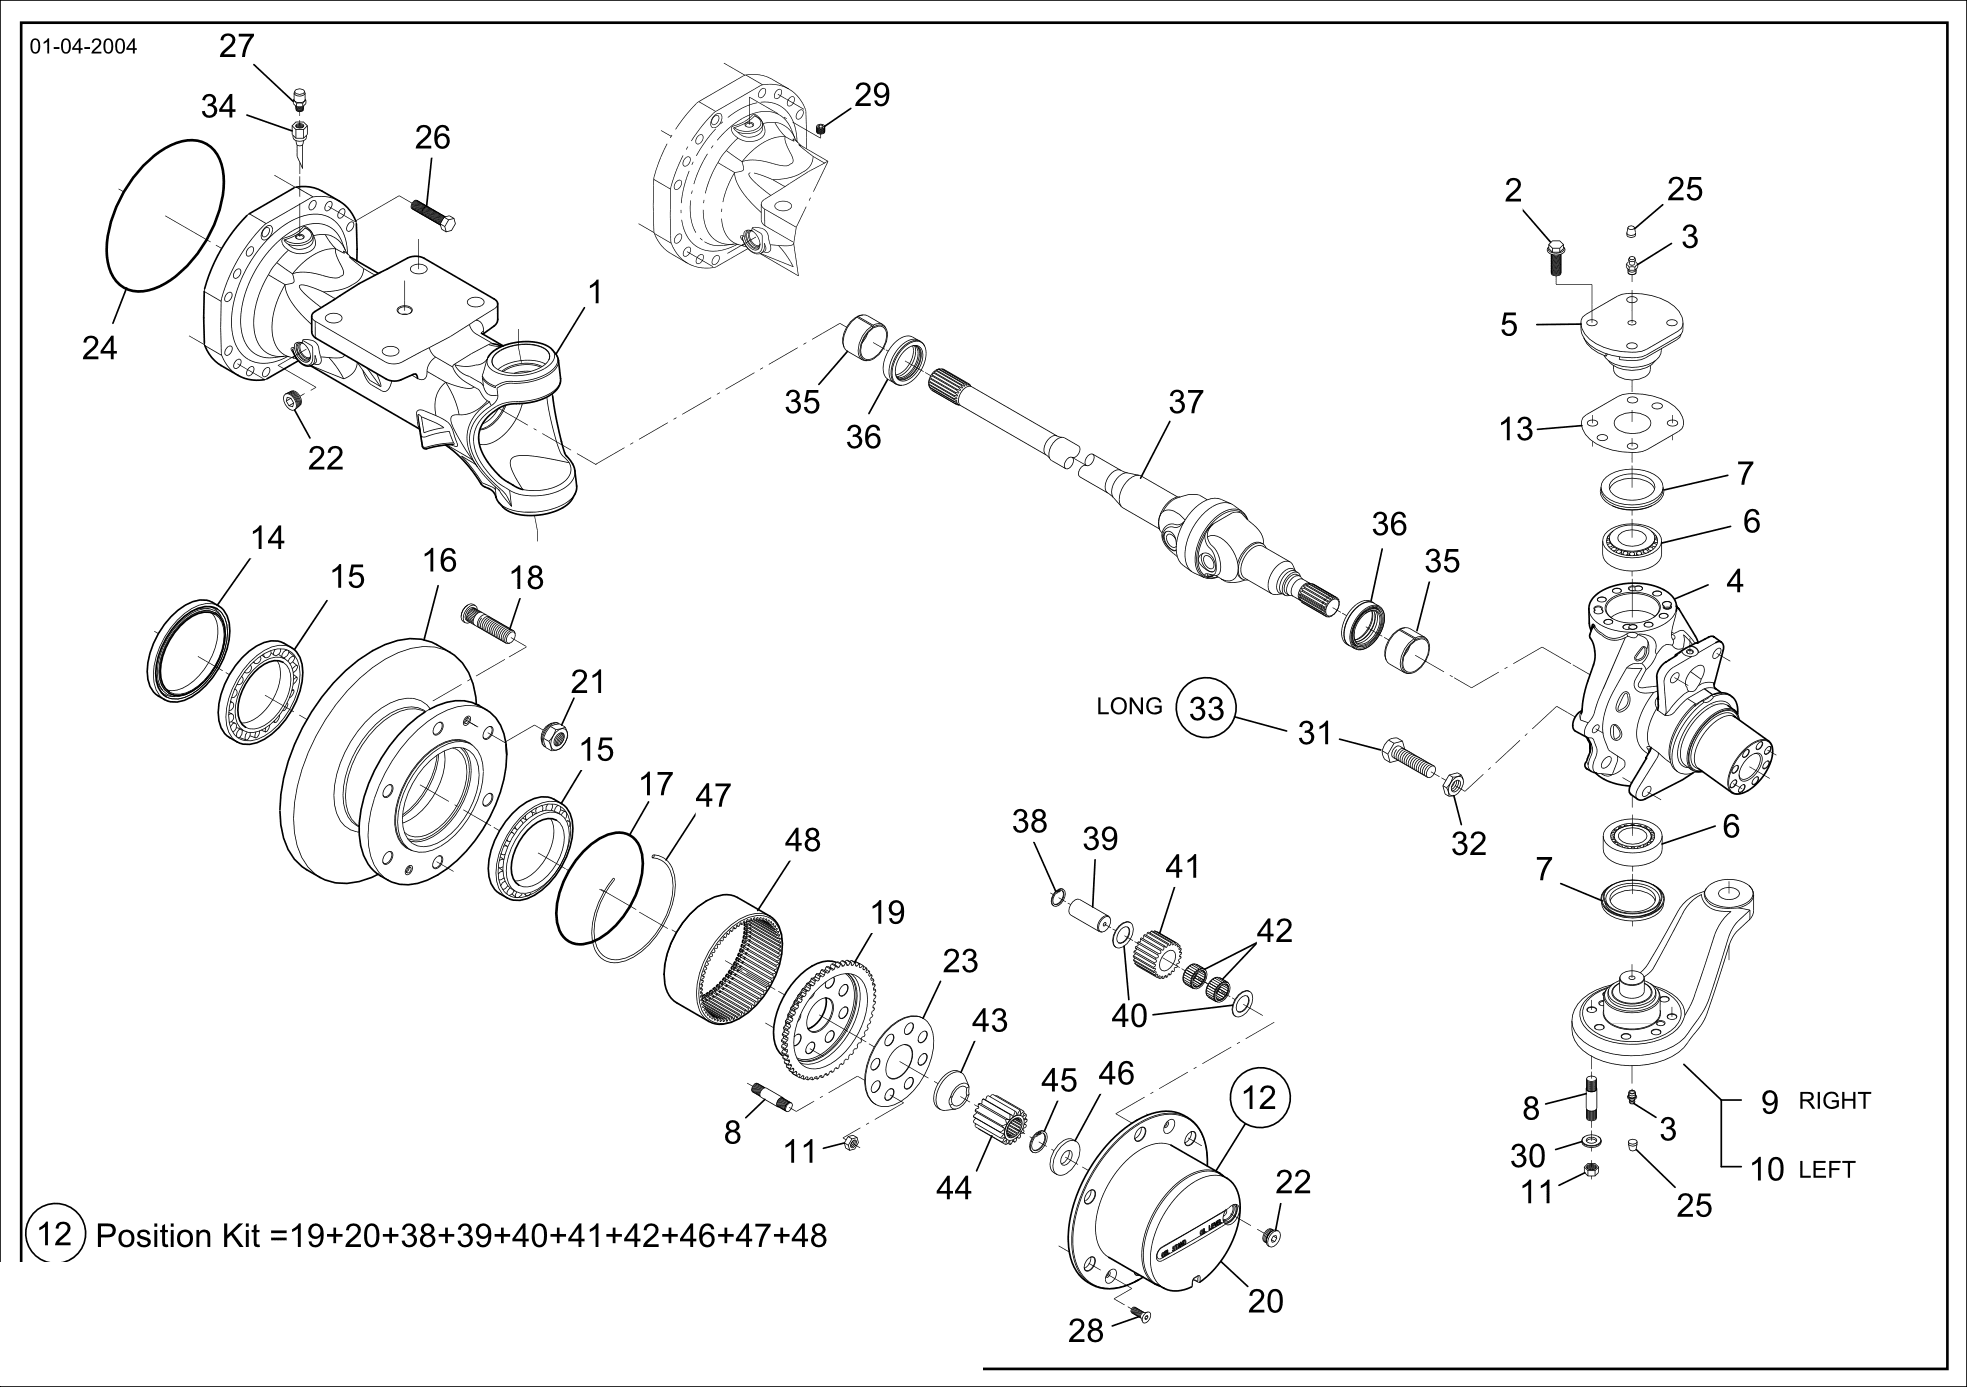 drawing for SCHOPF MASCHINENBAU GMBH 101170 - SHEET (figure 5)